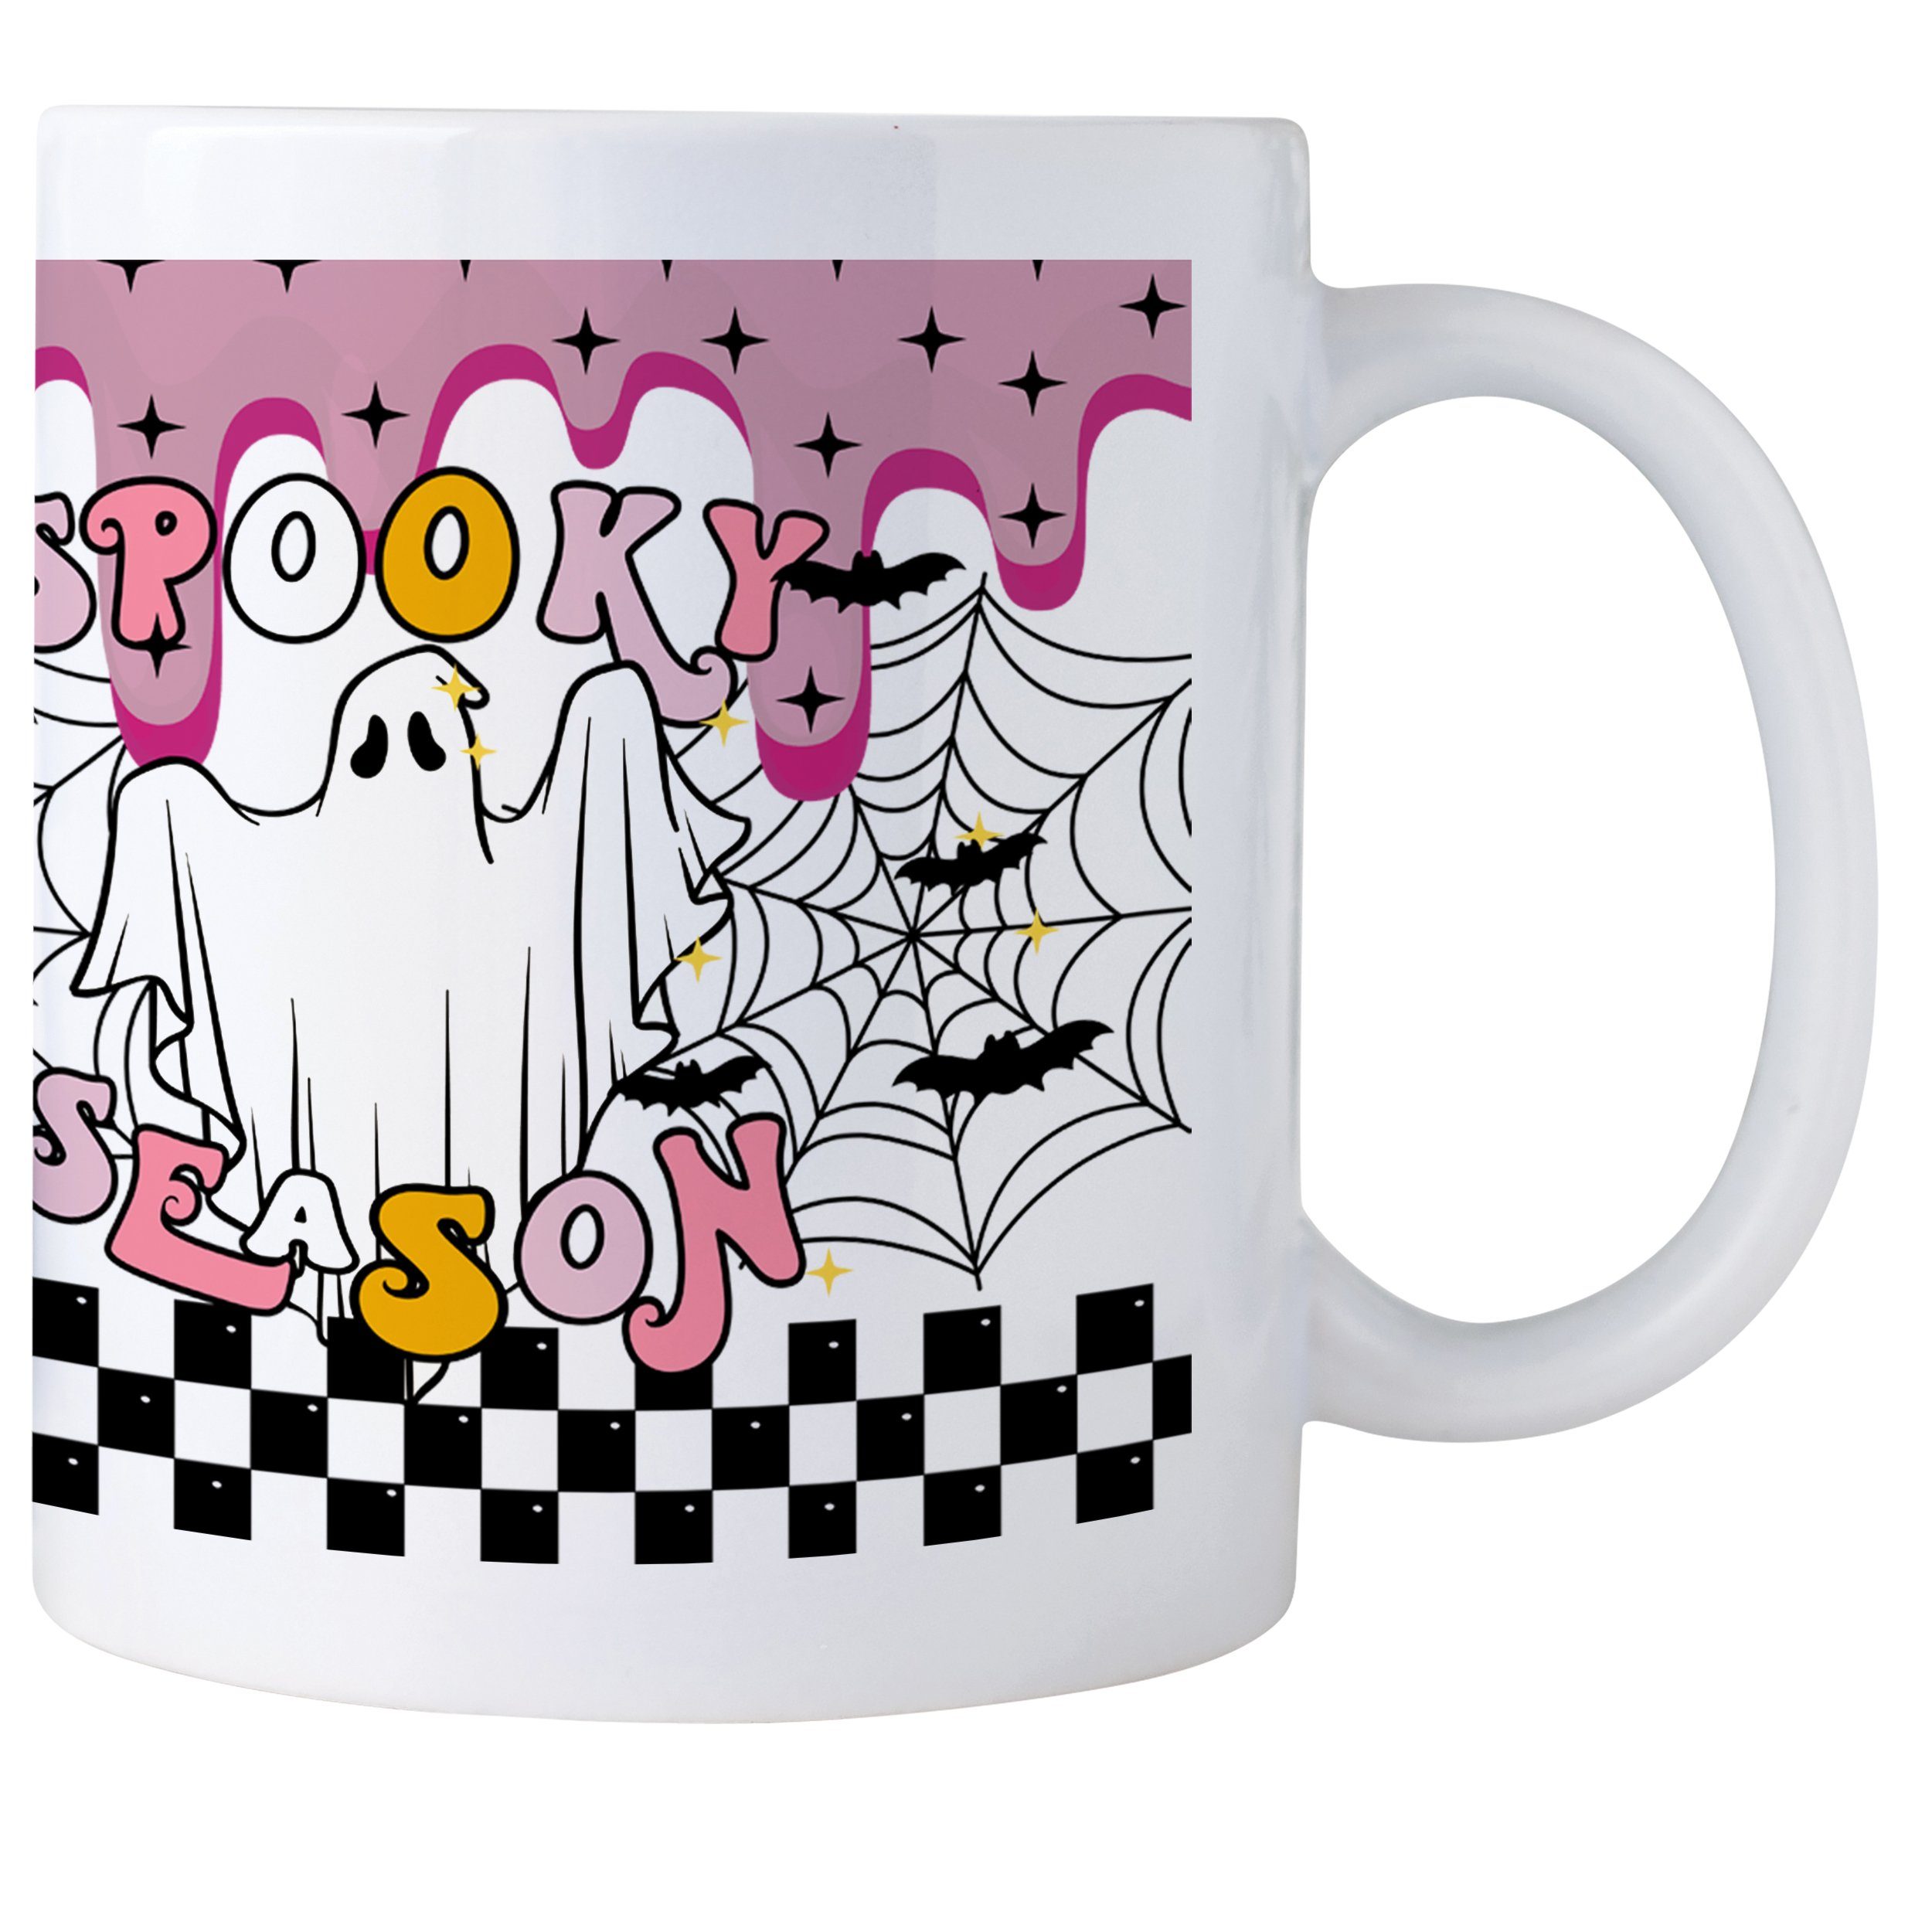 Giftandprint Tasse Spooky Season lustige Kaffeetasse als Geschenk zum Weihnachten, Spülmaschinengeeignet, Mikrowellengeeignet, mit Geschenkbox